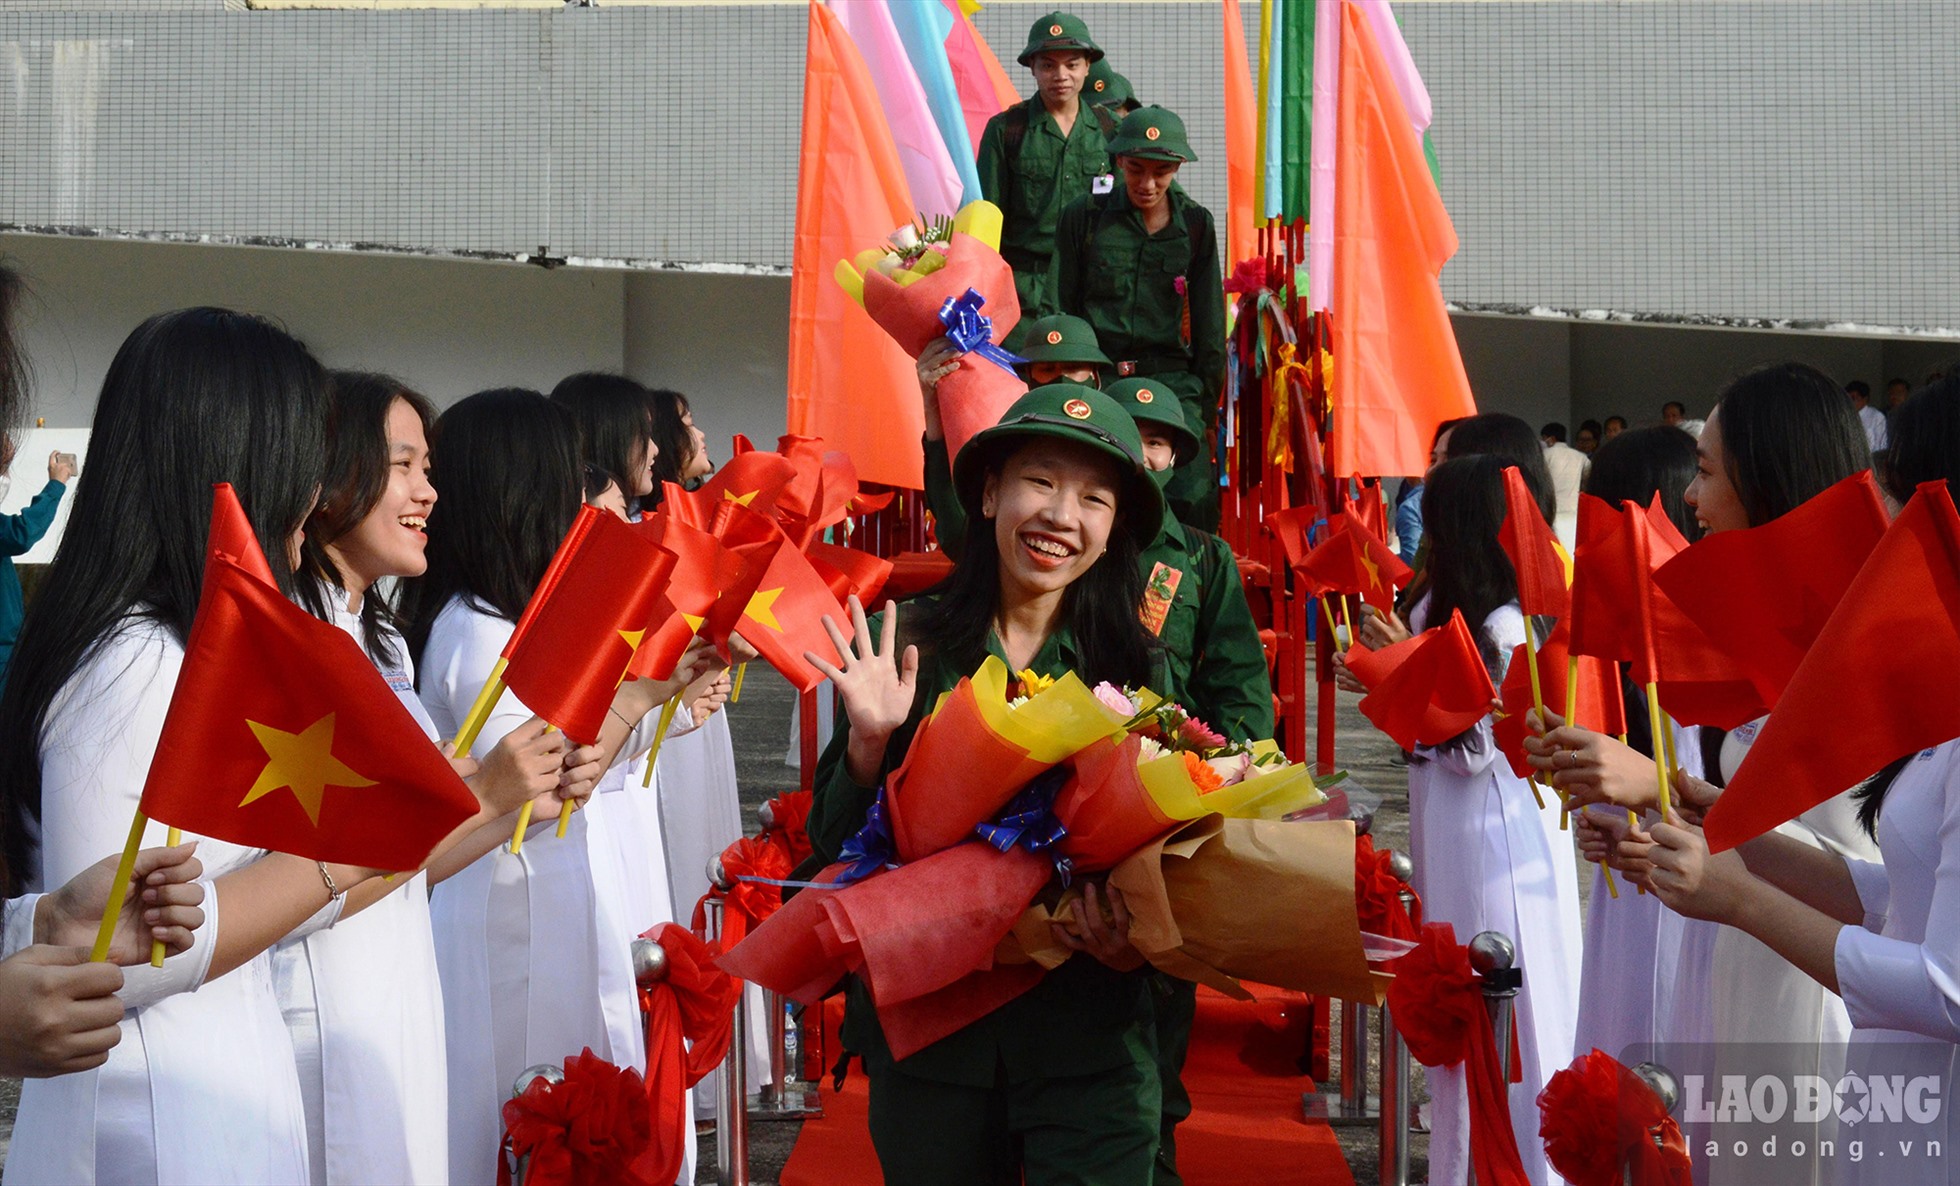 Nữ tân binh Đỗ Hoàng Quý Loan ở TP Quảng Ngãi cười rạng ngày trong ngày nhập ngũ. Ảnh: Ngọc Viên